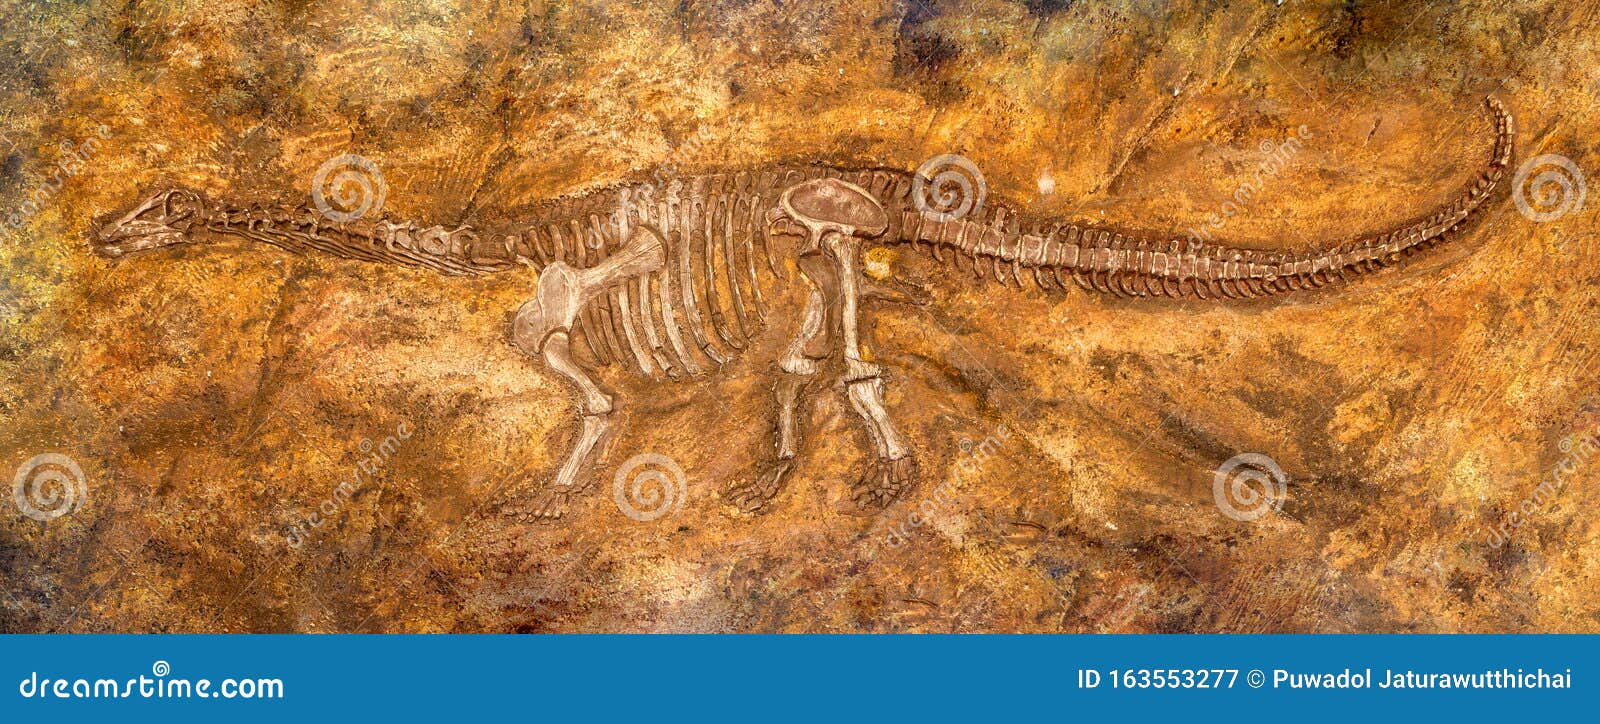 siamosaurus suteethorni . fossil of dinosaur at phu wiang national park . khon kaen . thailand